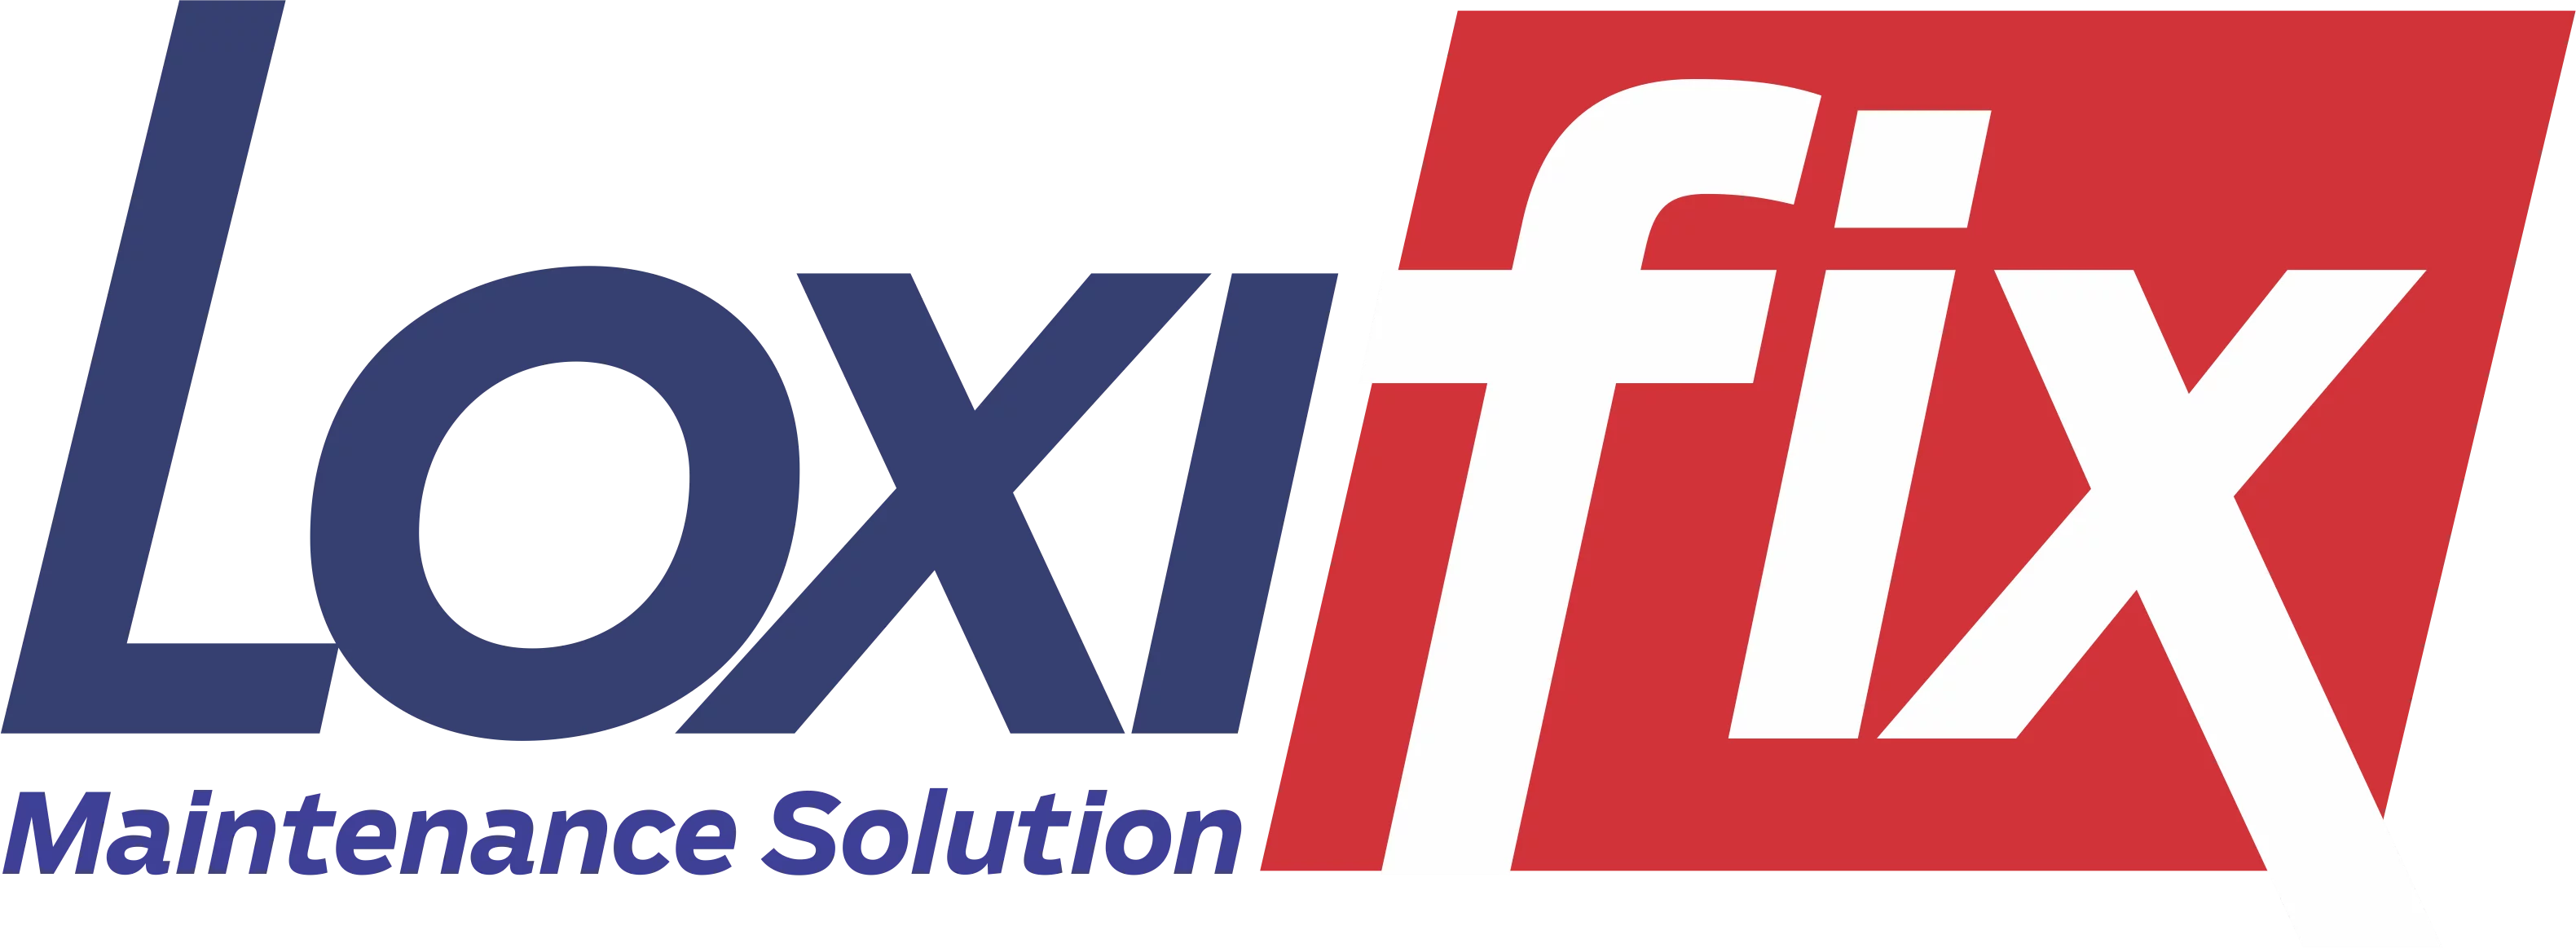 Loxifix logo finaal